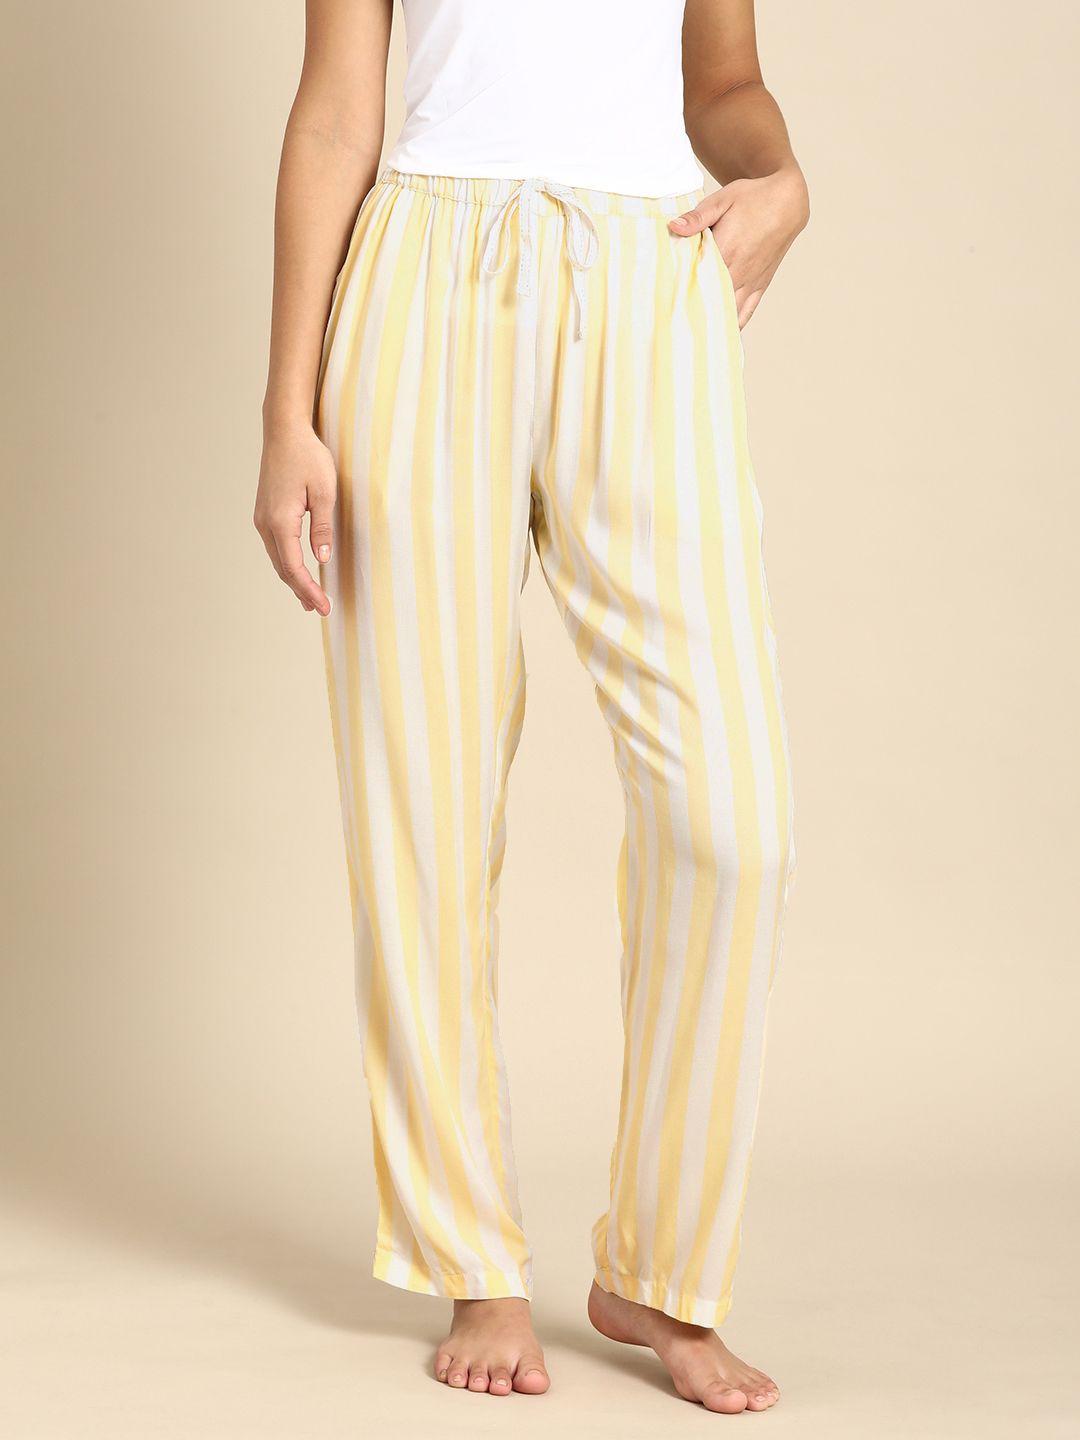 dreamz by pantaloons women off white & yellow striped lounge pants